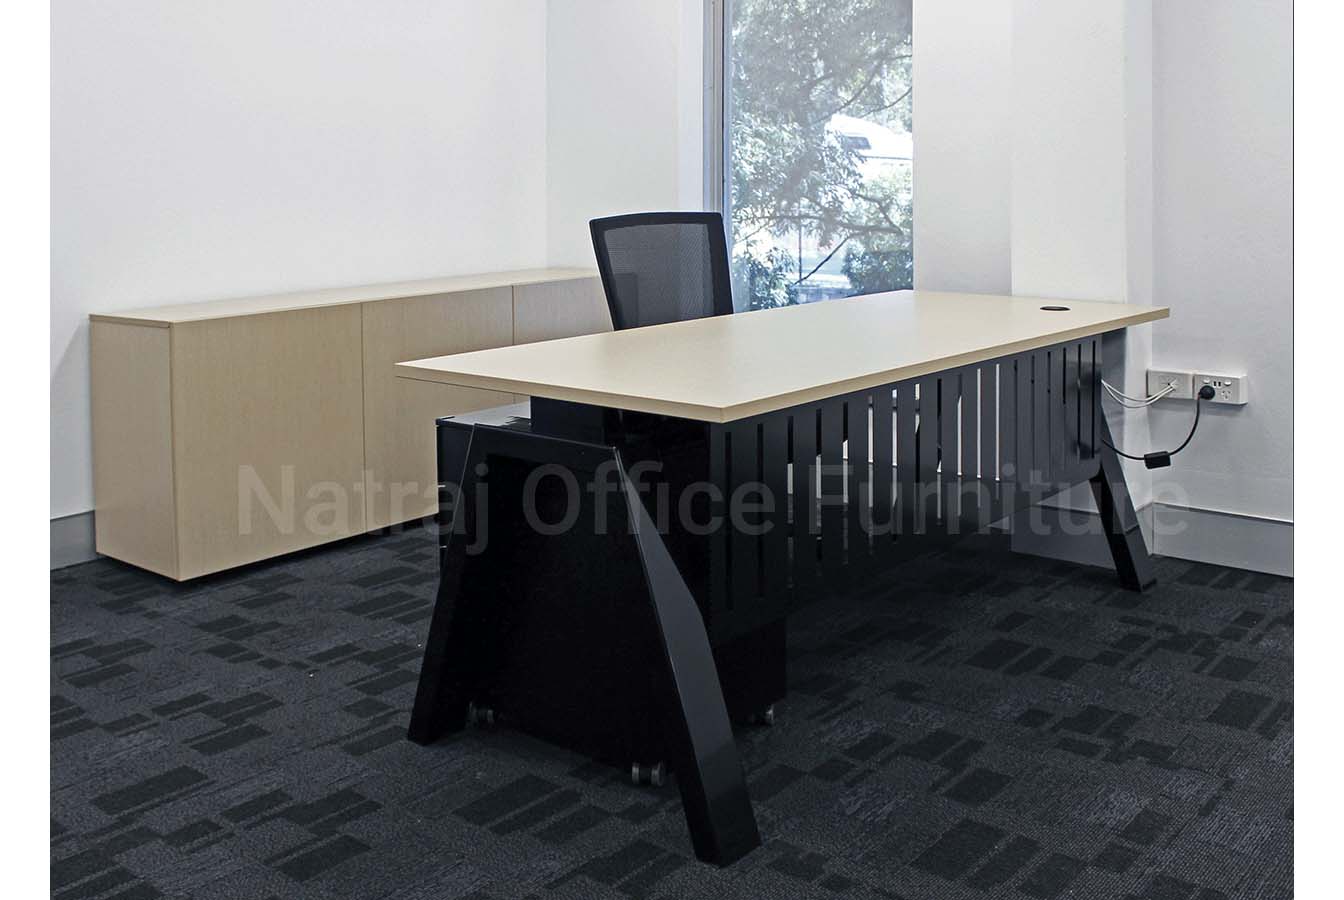 Natraj Executive Desk